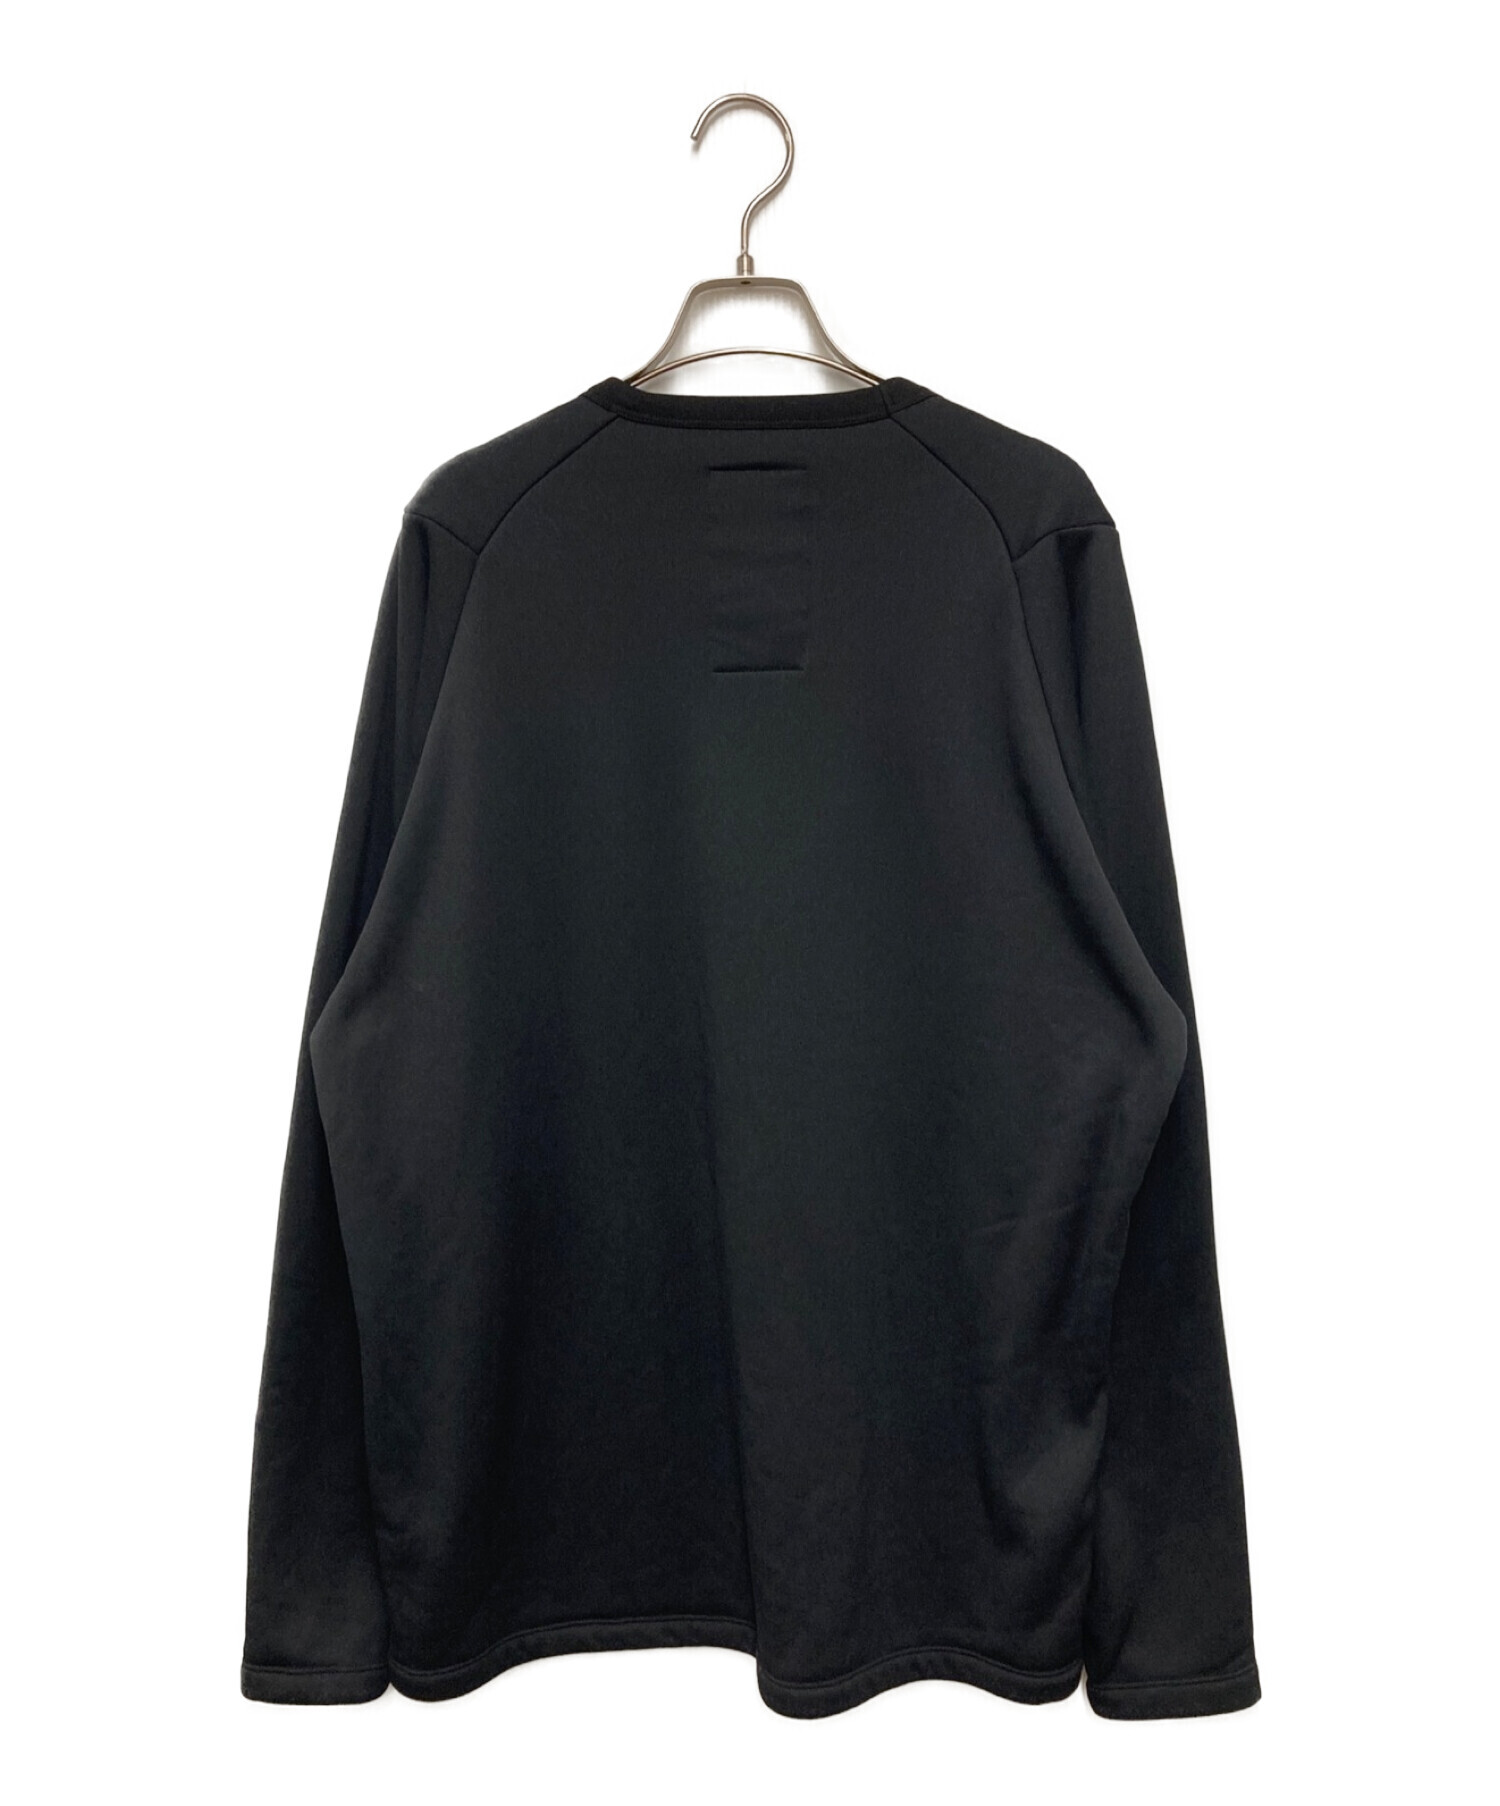 テアトラ カートリッジ セーター 長袖Tシャツ 3 ブラック /◆